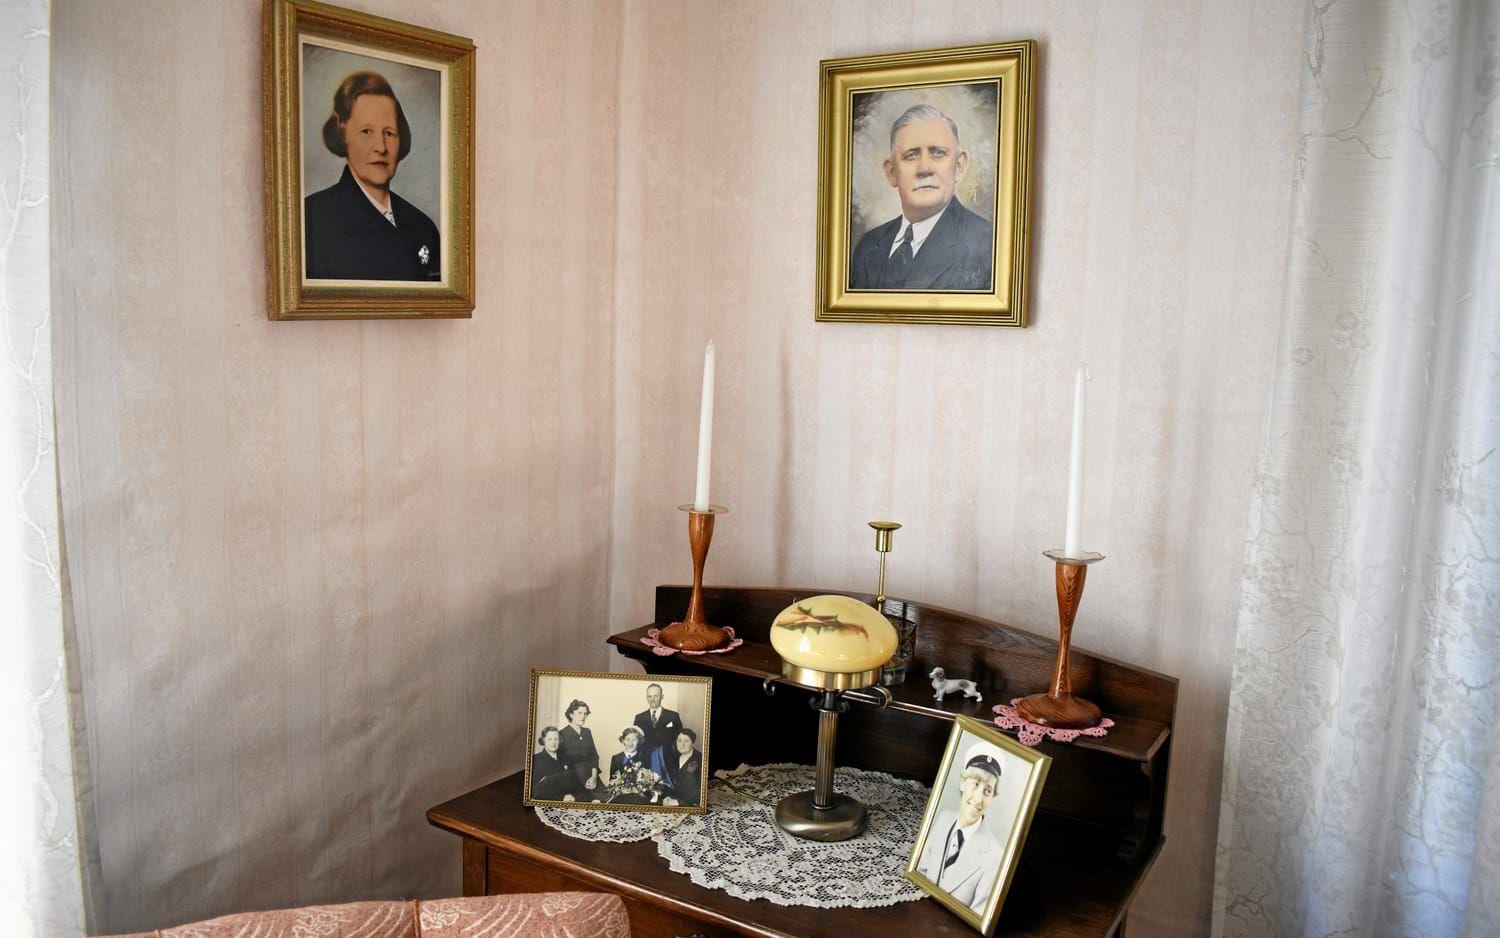 I september förra året gjorde Hallandsposten ett reportage om huset på Fagerhultsvägen. Huset lät byggas 1917 av Hilma och Karl Pihl och drygt hundra år senare finns mycket av originalinredningen kvar.